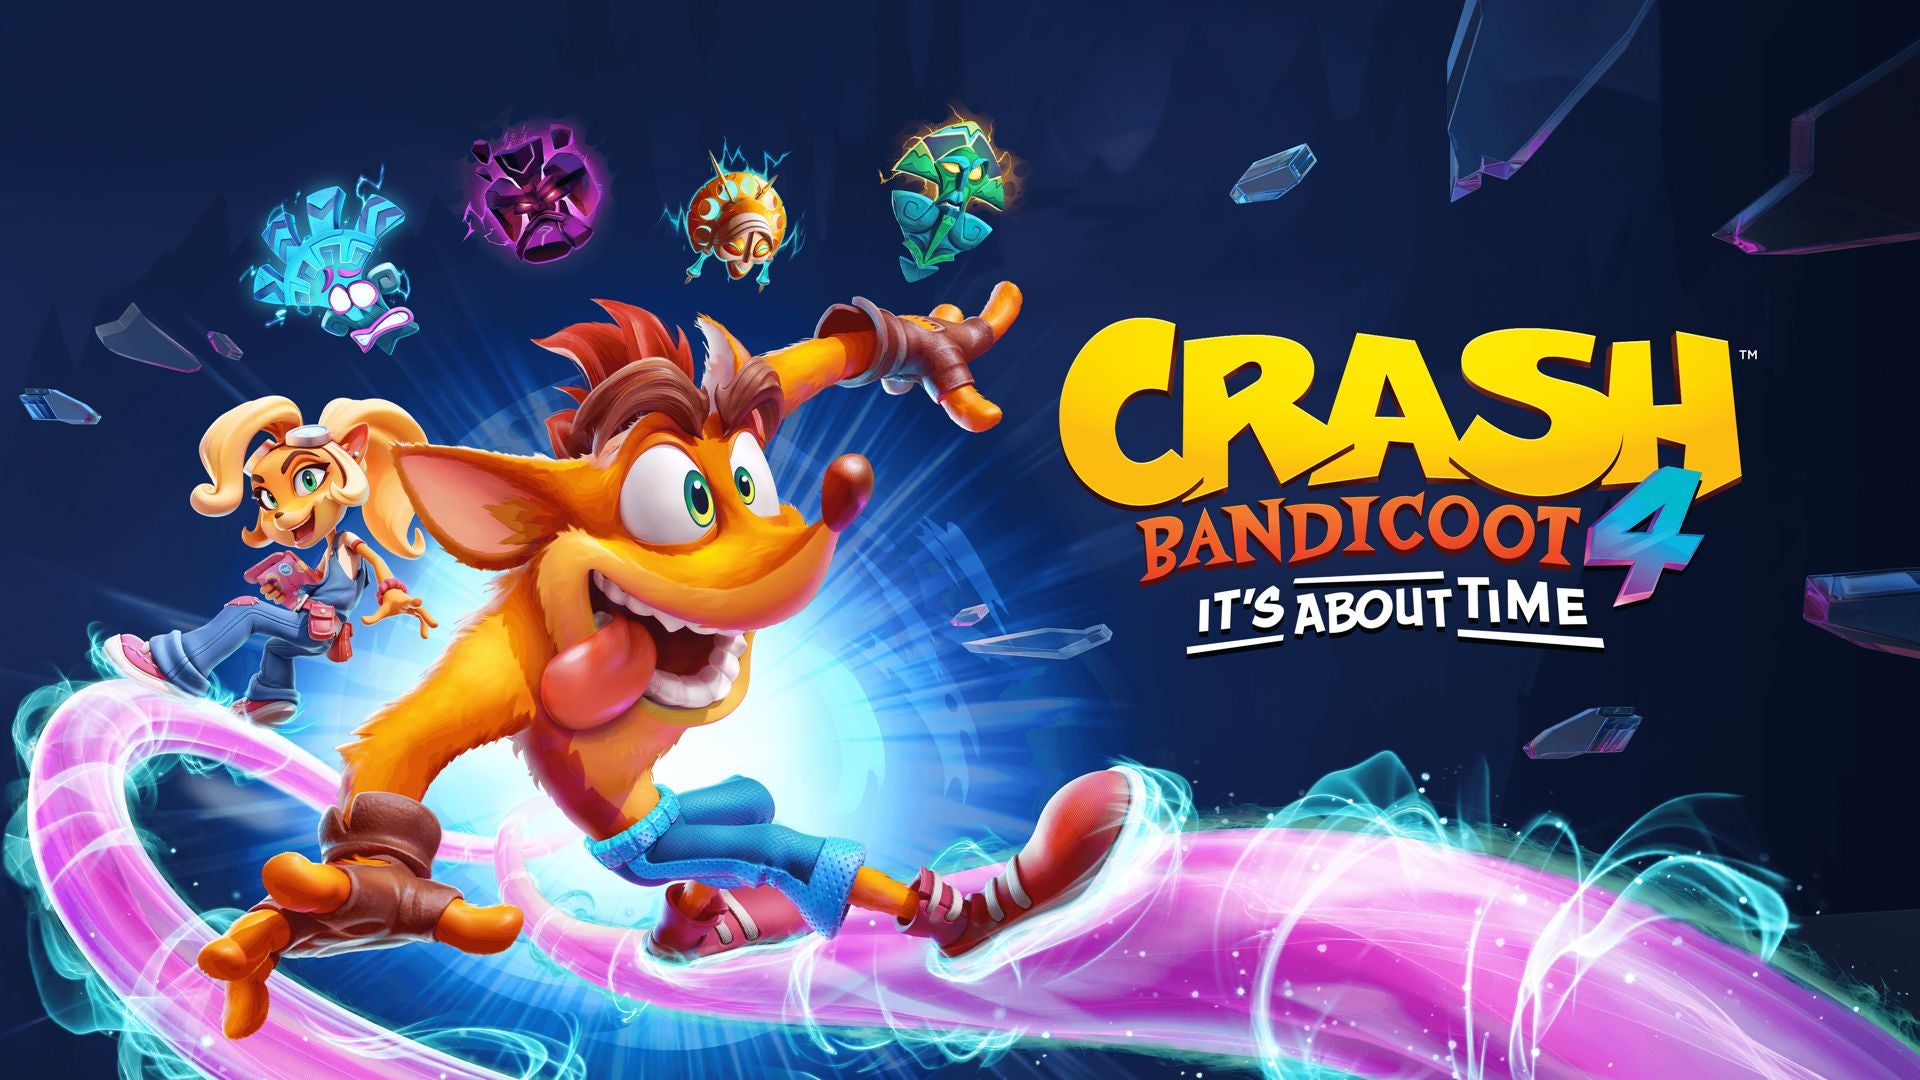 It's About [Demo] Time” - ¡La Demo de Crash Bandicoot 4: It's About Time llega la próxima semana!